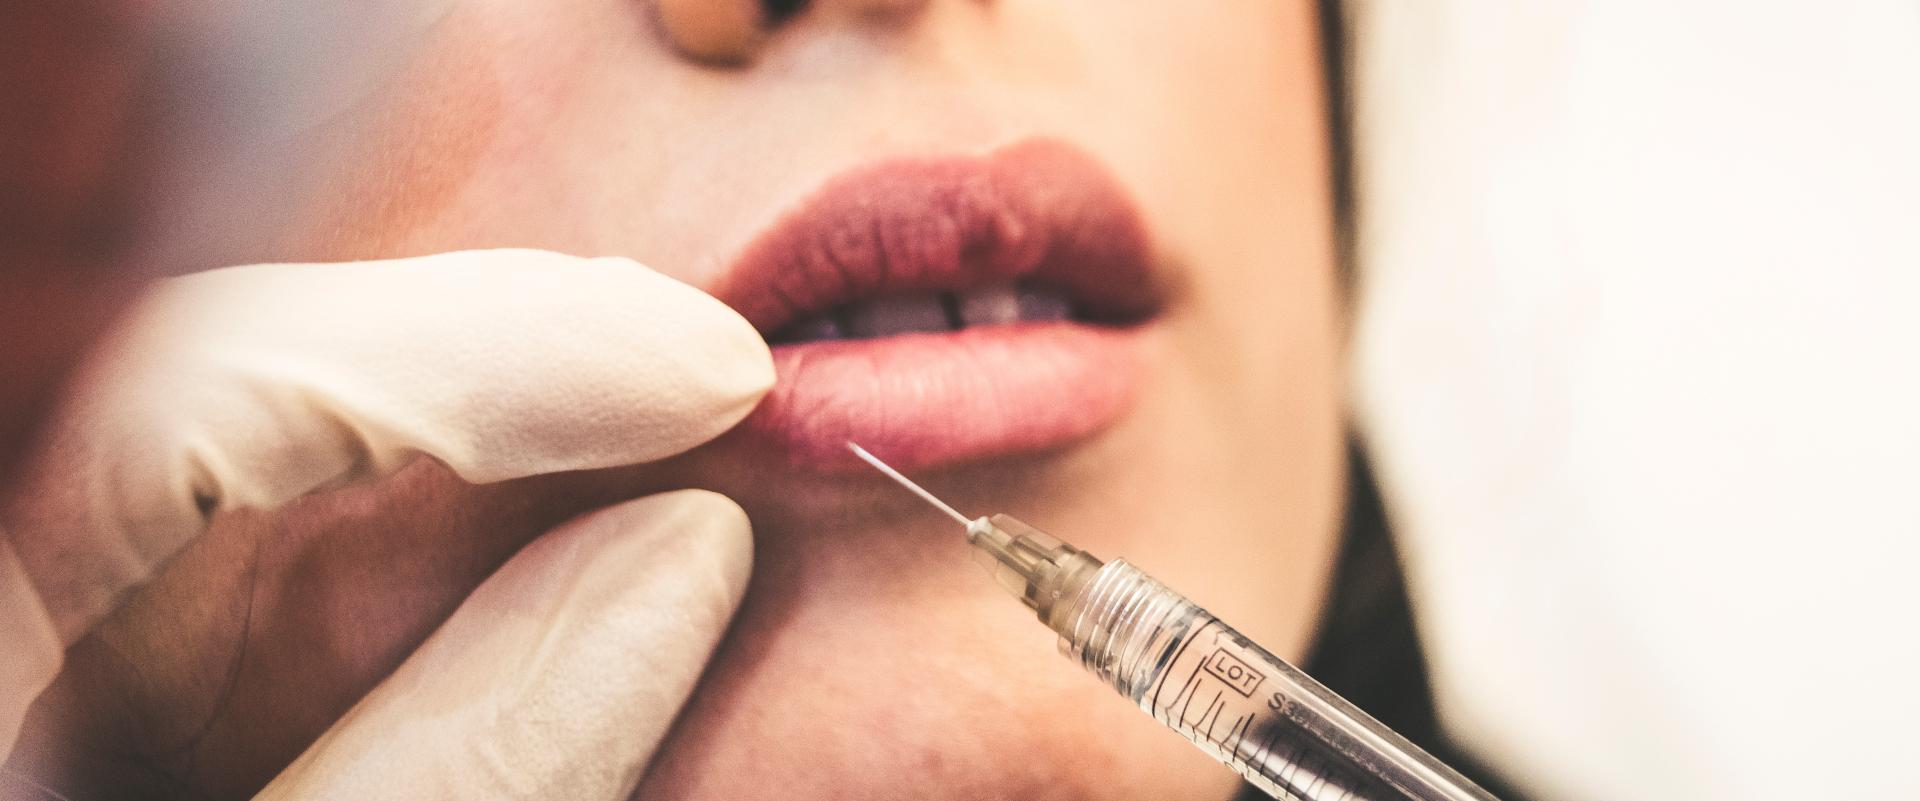 Ministerstwo Zdrowia pracuje nad listą zabiegów zakazanych do wykonywania w gabinetach kosmetycznych